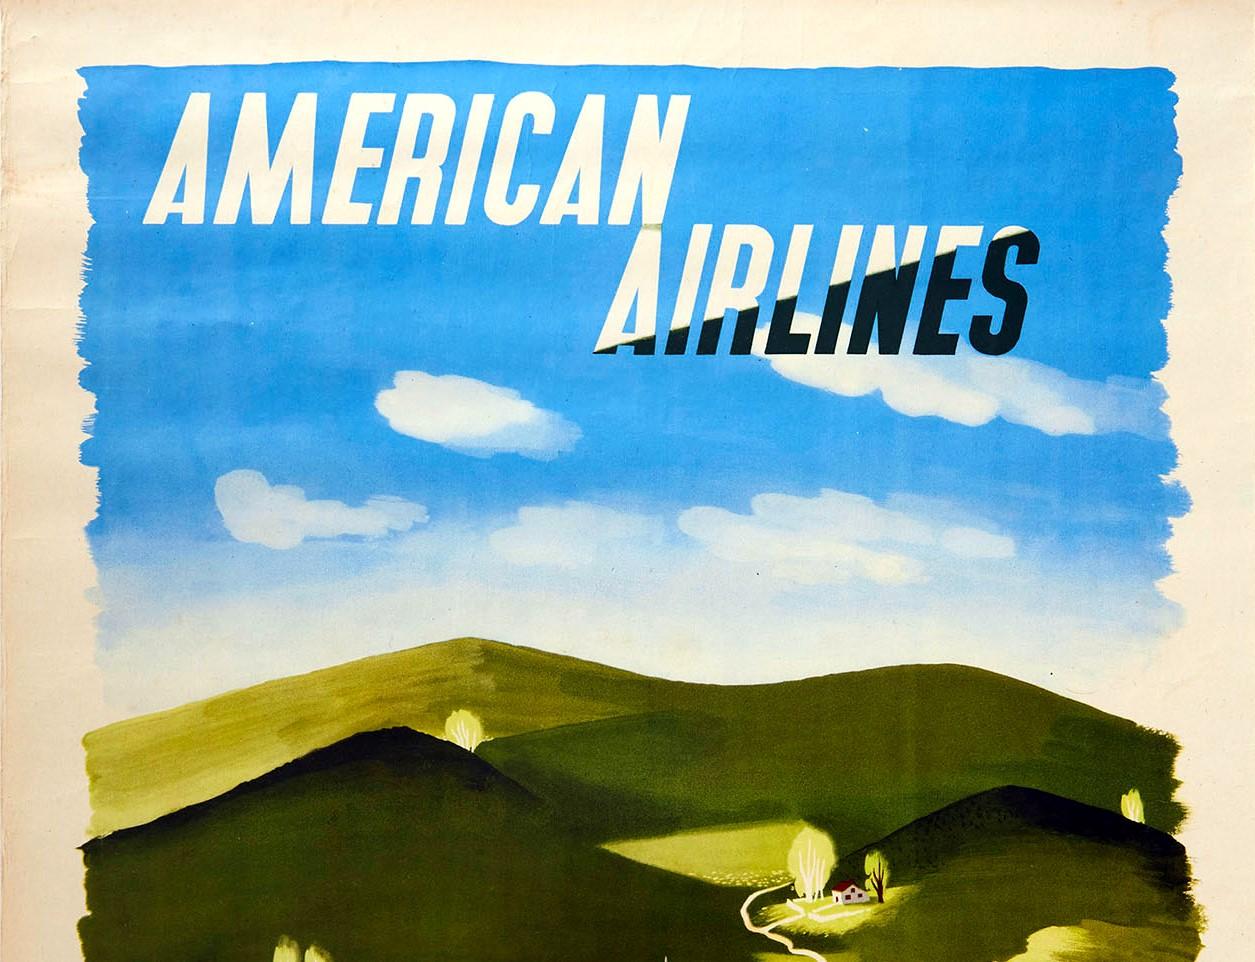 Original-Reisewerbeplakat - American Airlines nach Neuengland - entworfen von einem der renommiertesten Plakatkünstler des 20. Jahrhunderts Edward McKnight Kauffer (1890-1954) mit einer malerischen Landschaftsansicht in Grün- und Gelbtönen eines